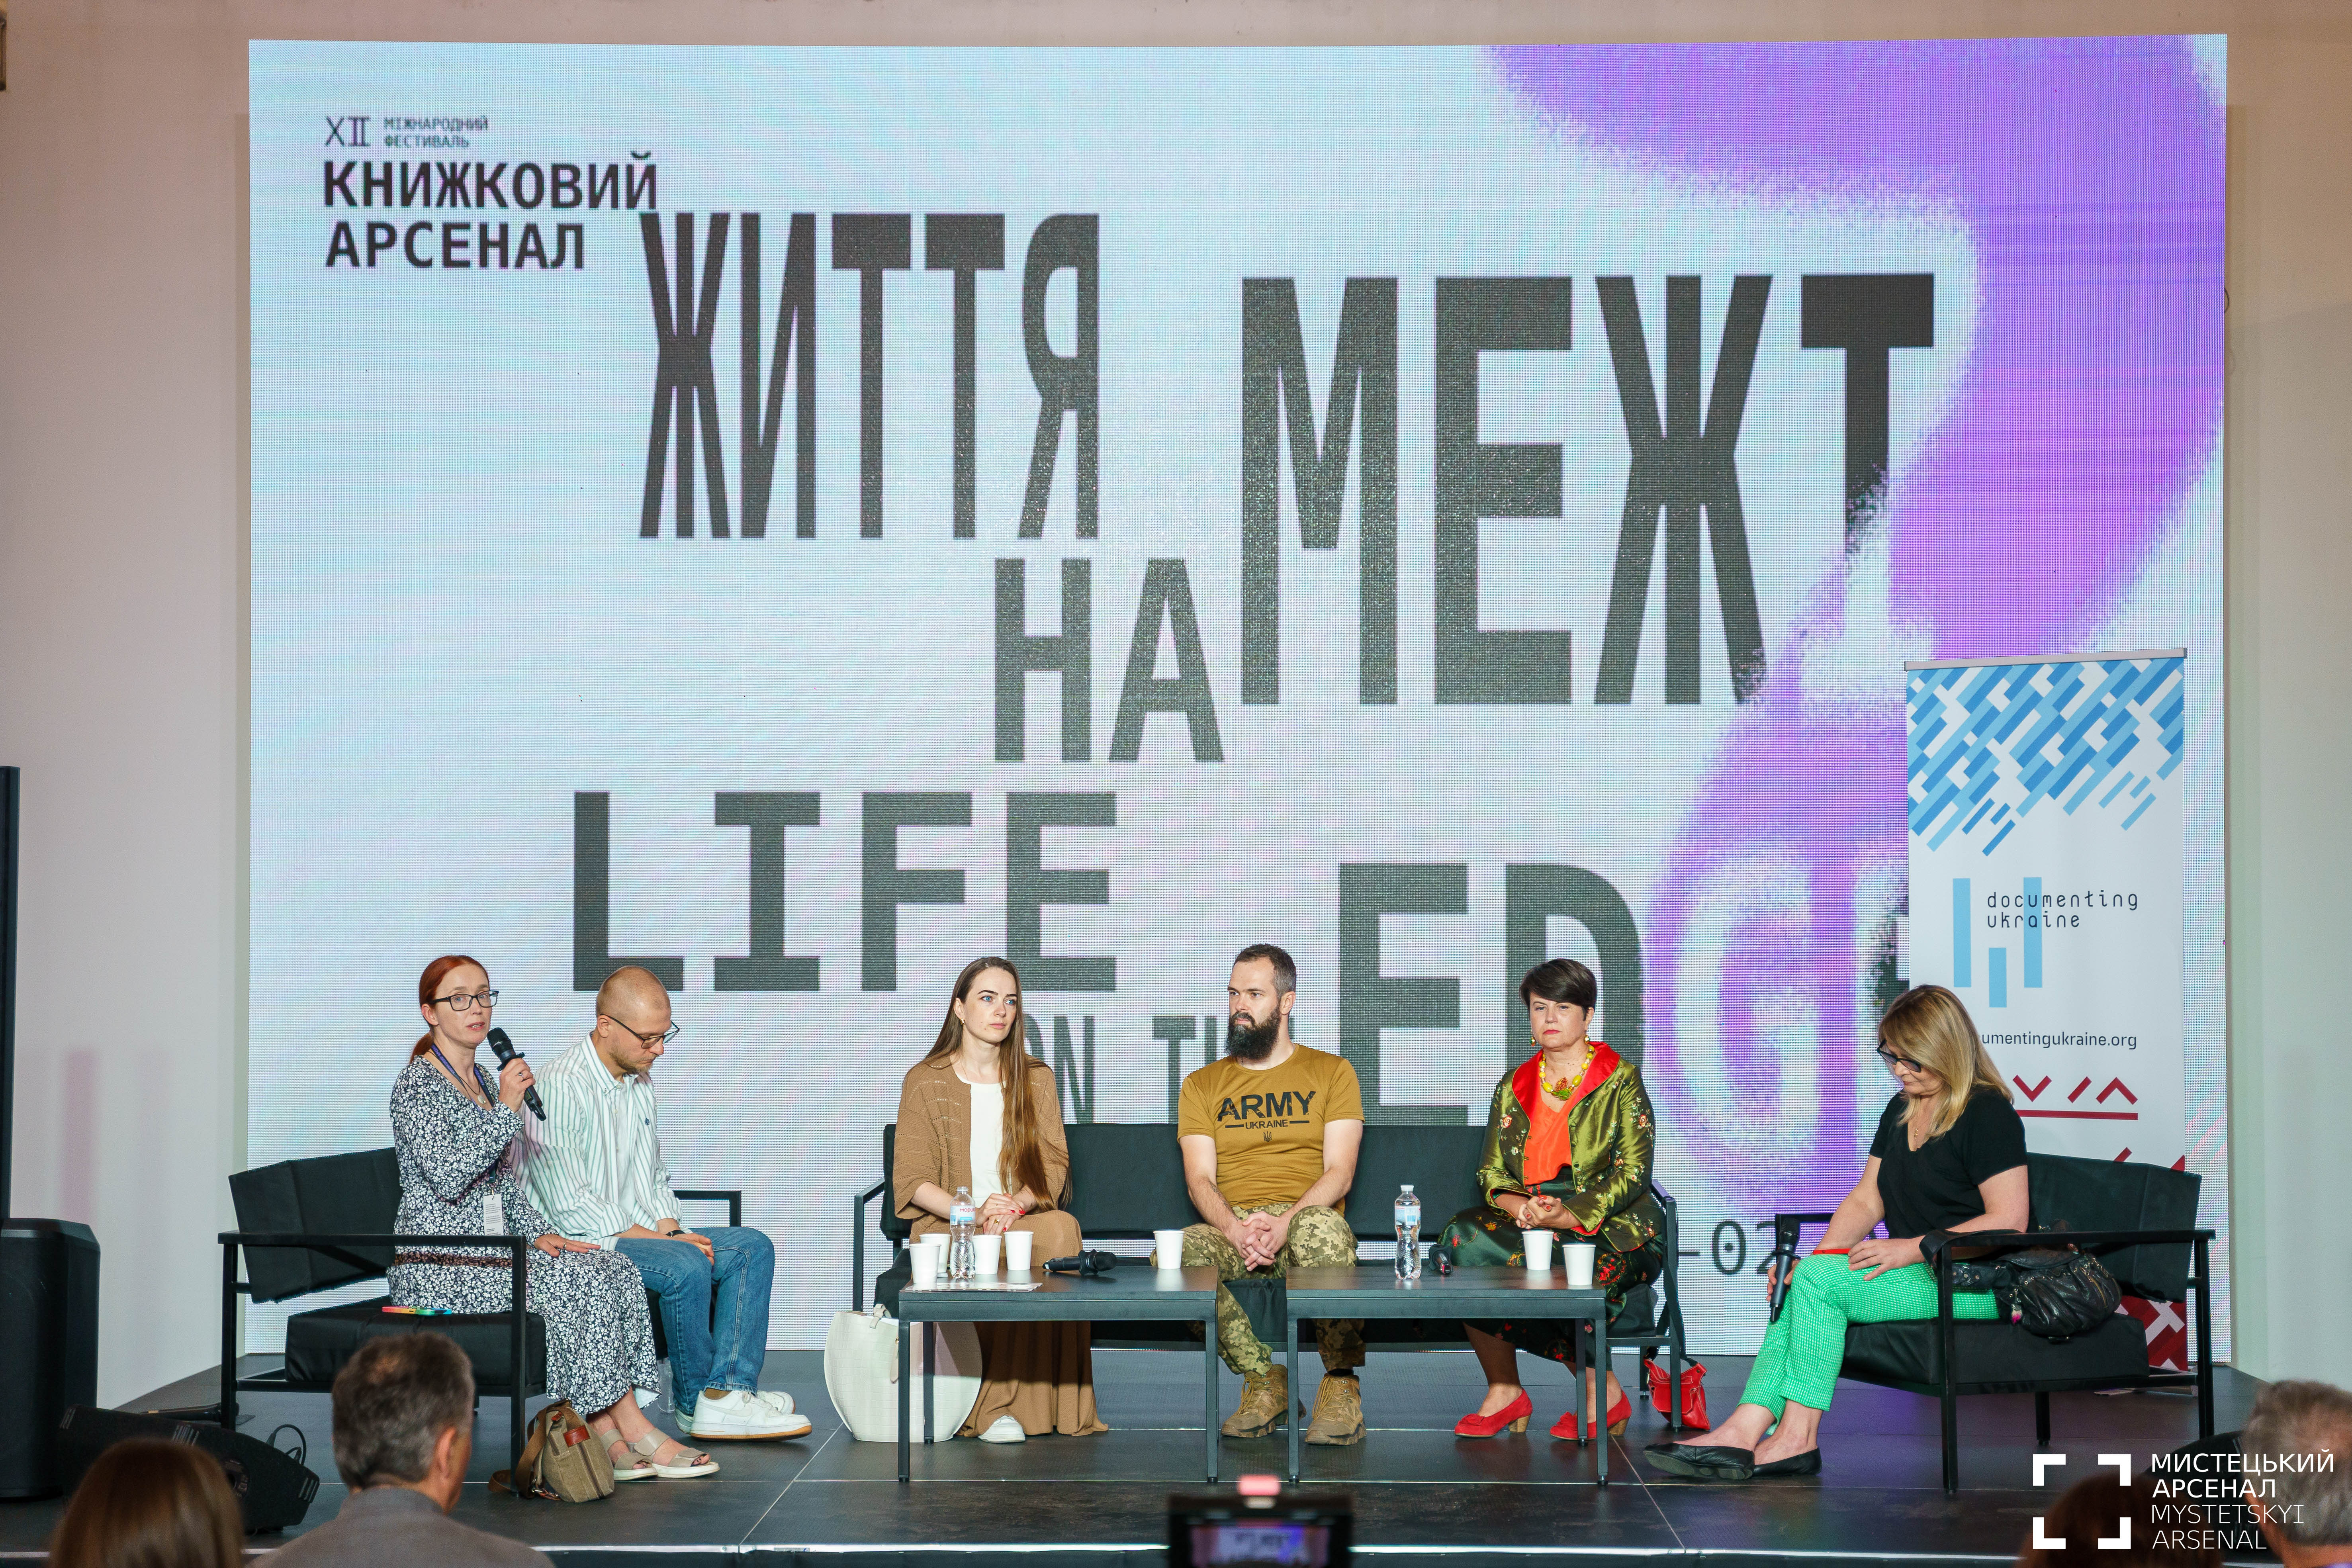 From left to right: Tetyana Ogarkova, Oleksandr Mykhed, Oleksandra Matviichuk, Oleksandr Komarov, Larysa Denysenko, Olena Stiazhkina